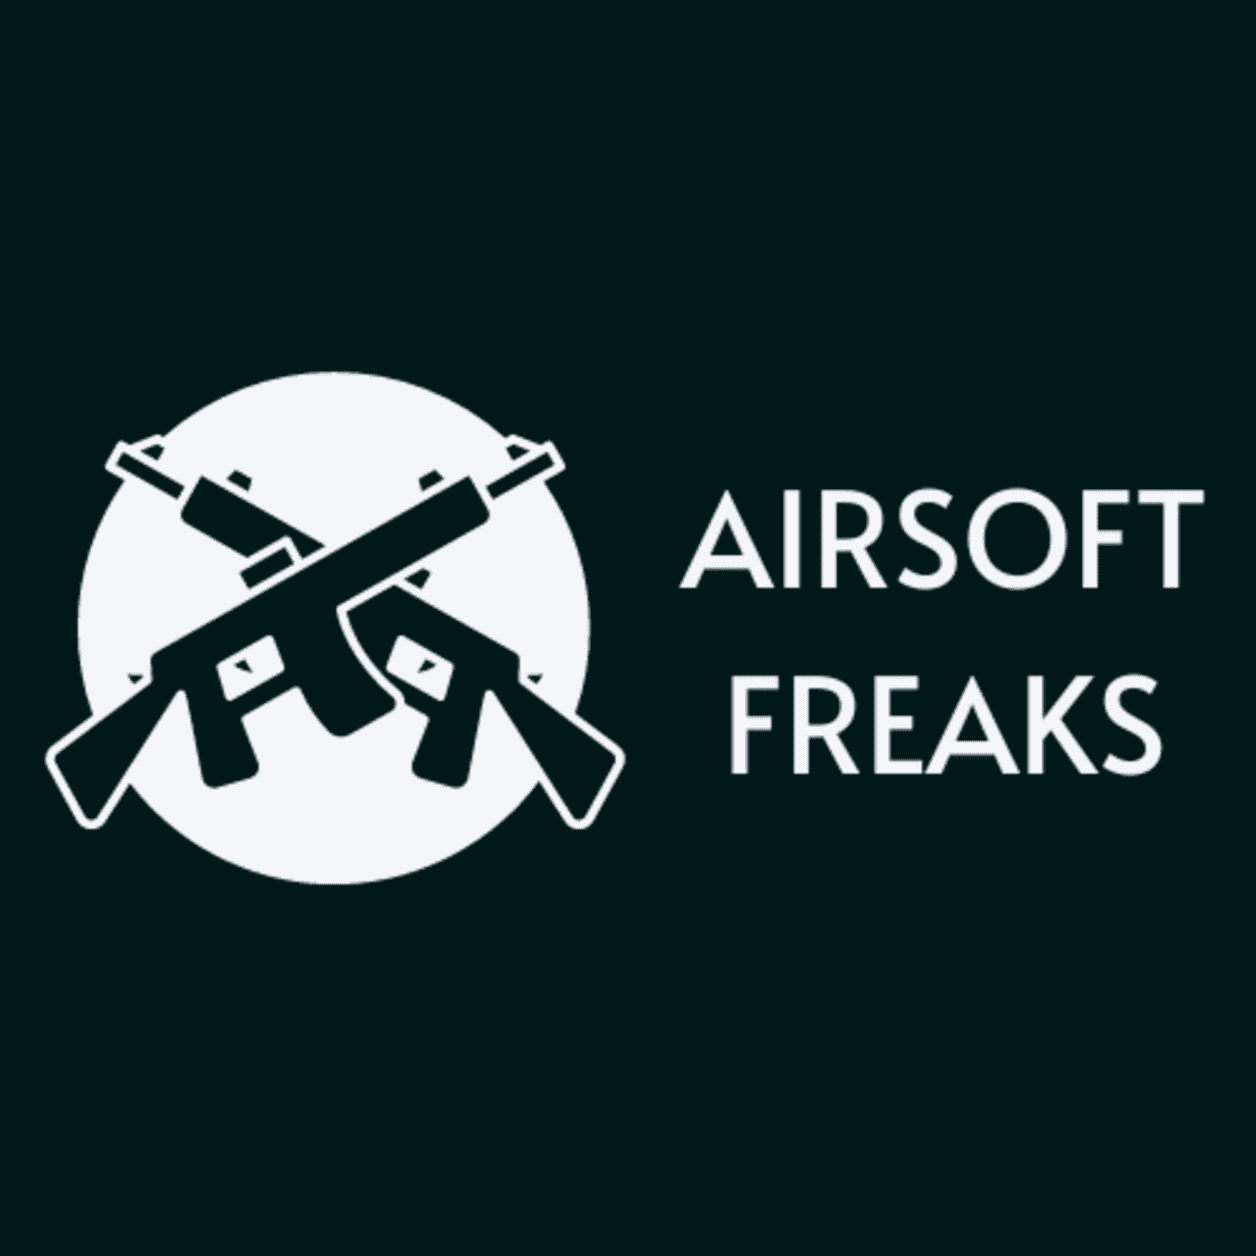 (c) Airsoft-freaks.com